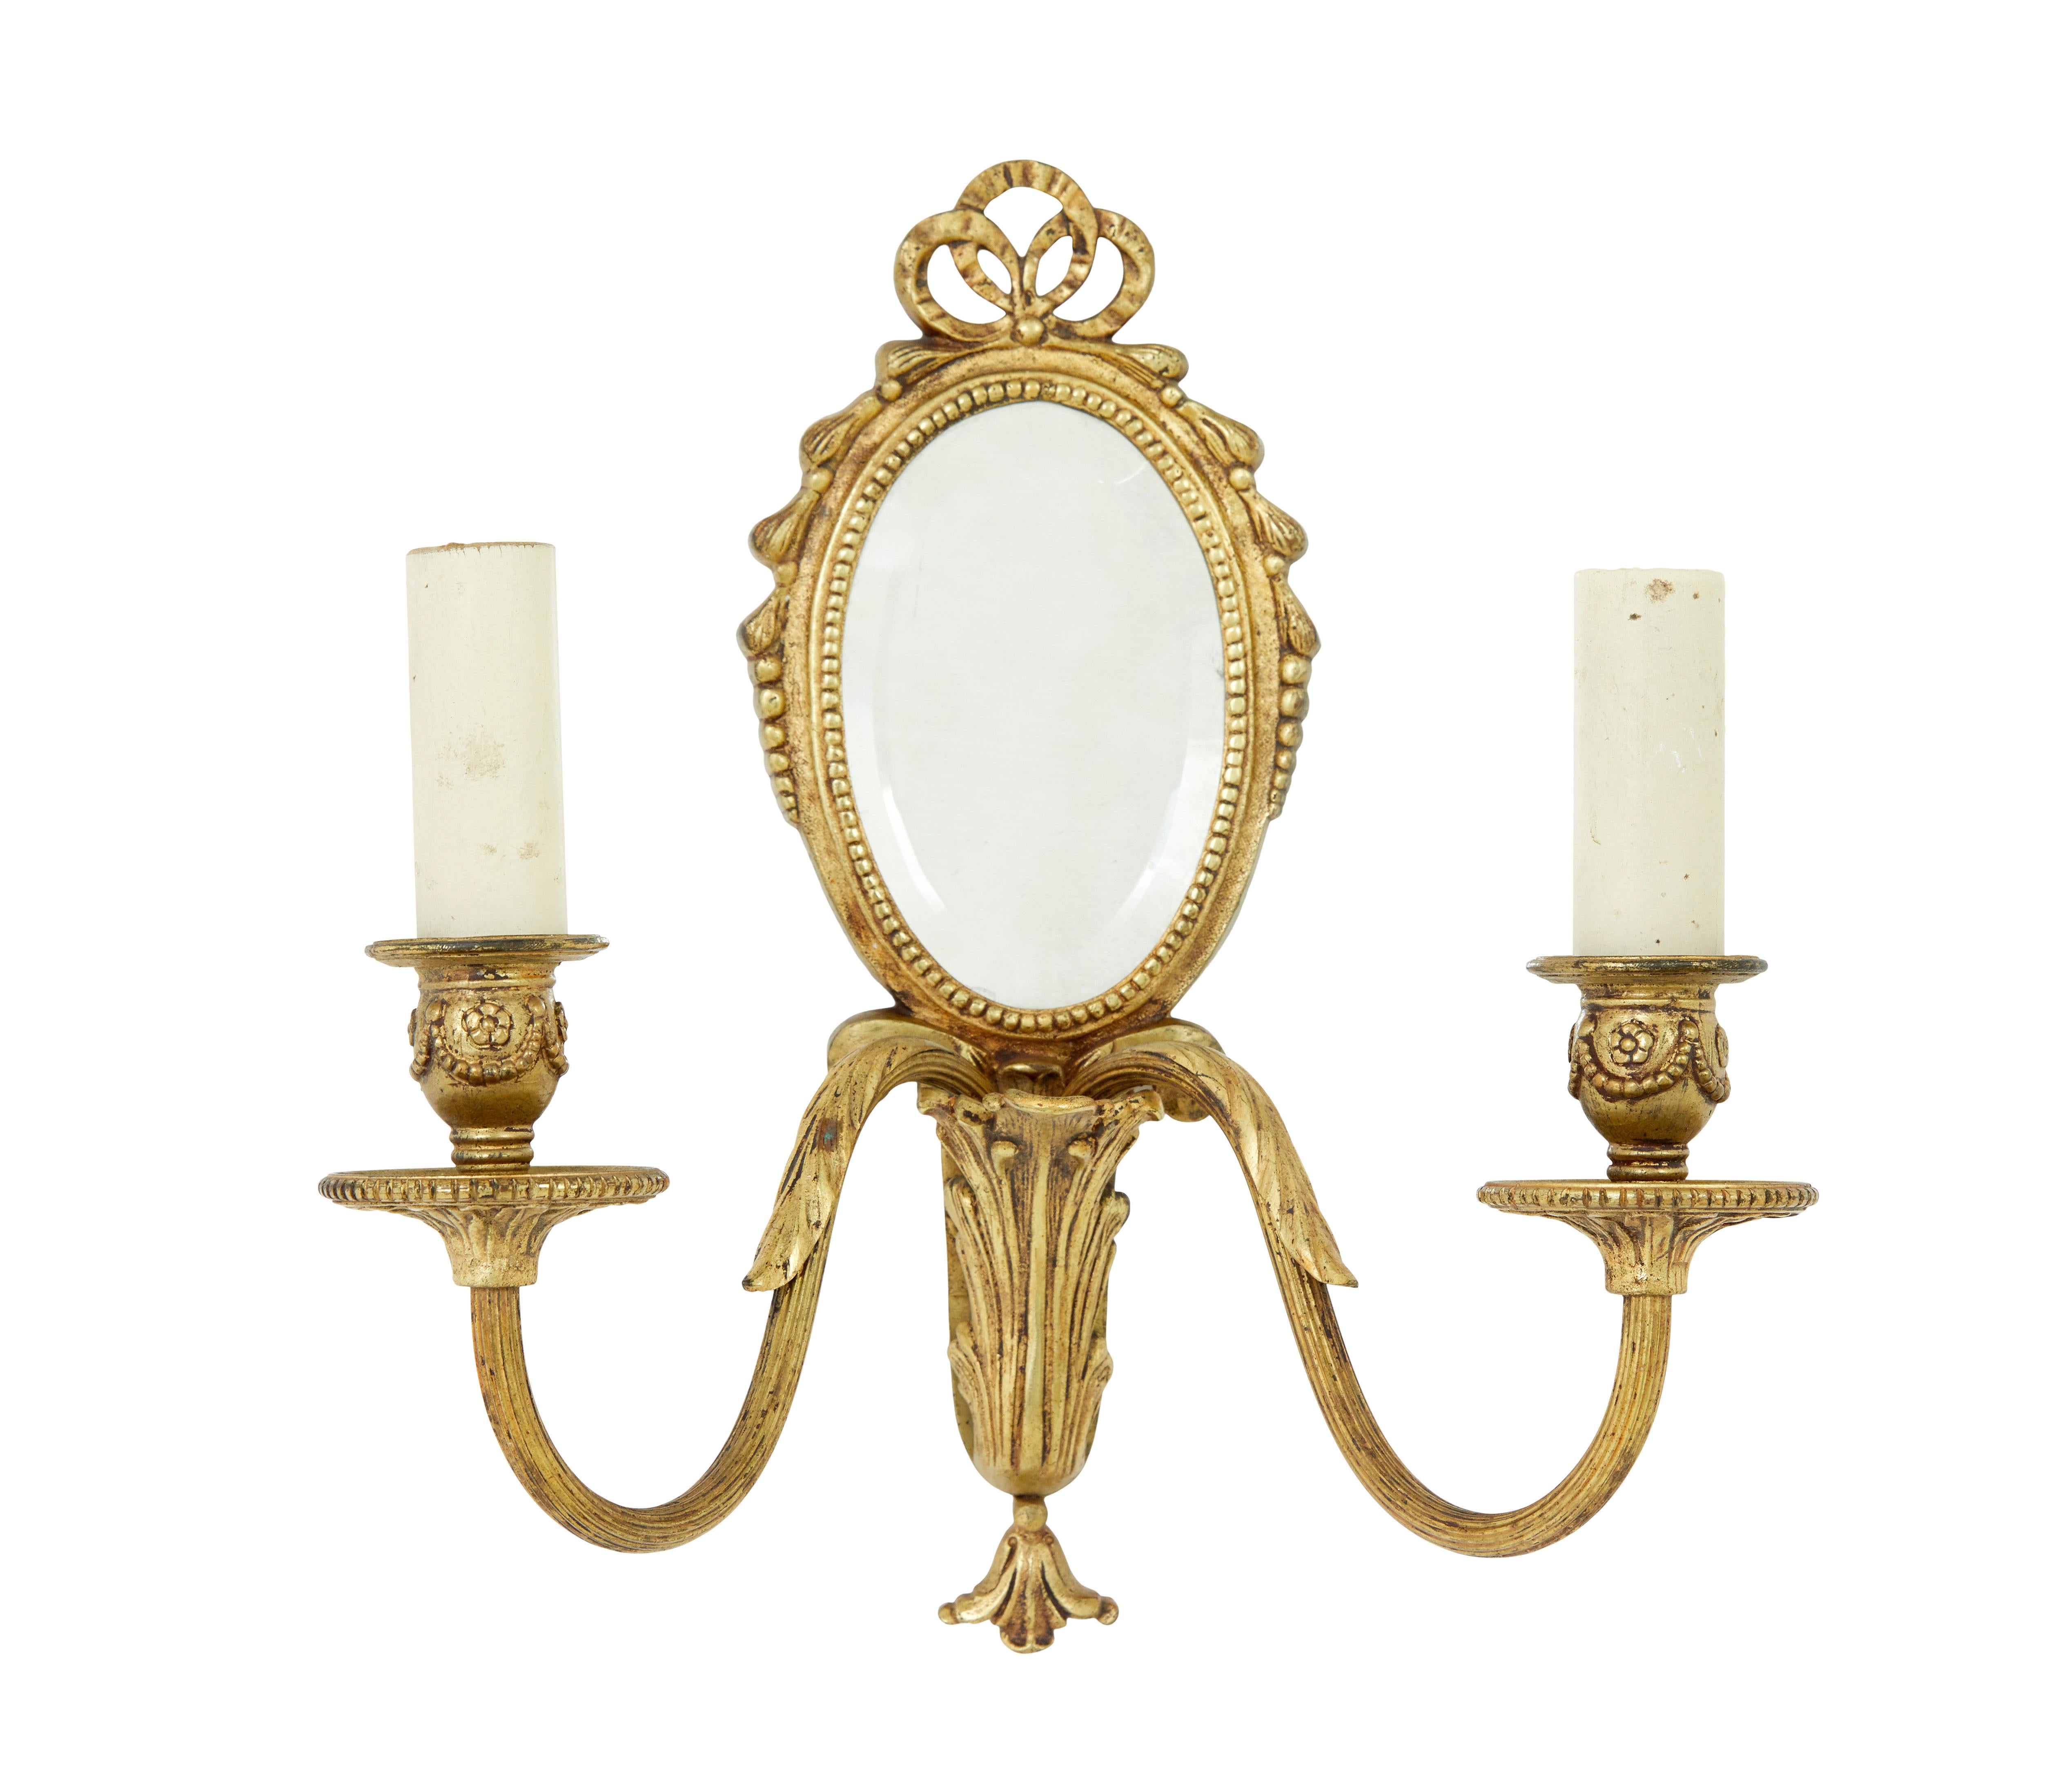 Paar zweiarmige dekorative Wandleuchten um 1960.

Ovaler Spiegel mit abgeschrägter Kante, umgeben von Perlenbordüren und Bügeln.  Geformte Arme mit einer Leuchte, die aus einer Urne herausragt. Originale, gefälschte Kerzenabdeckungen.

Einige